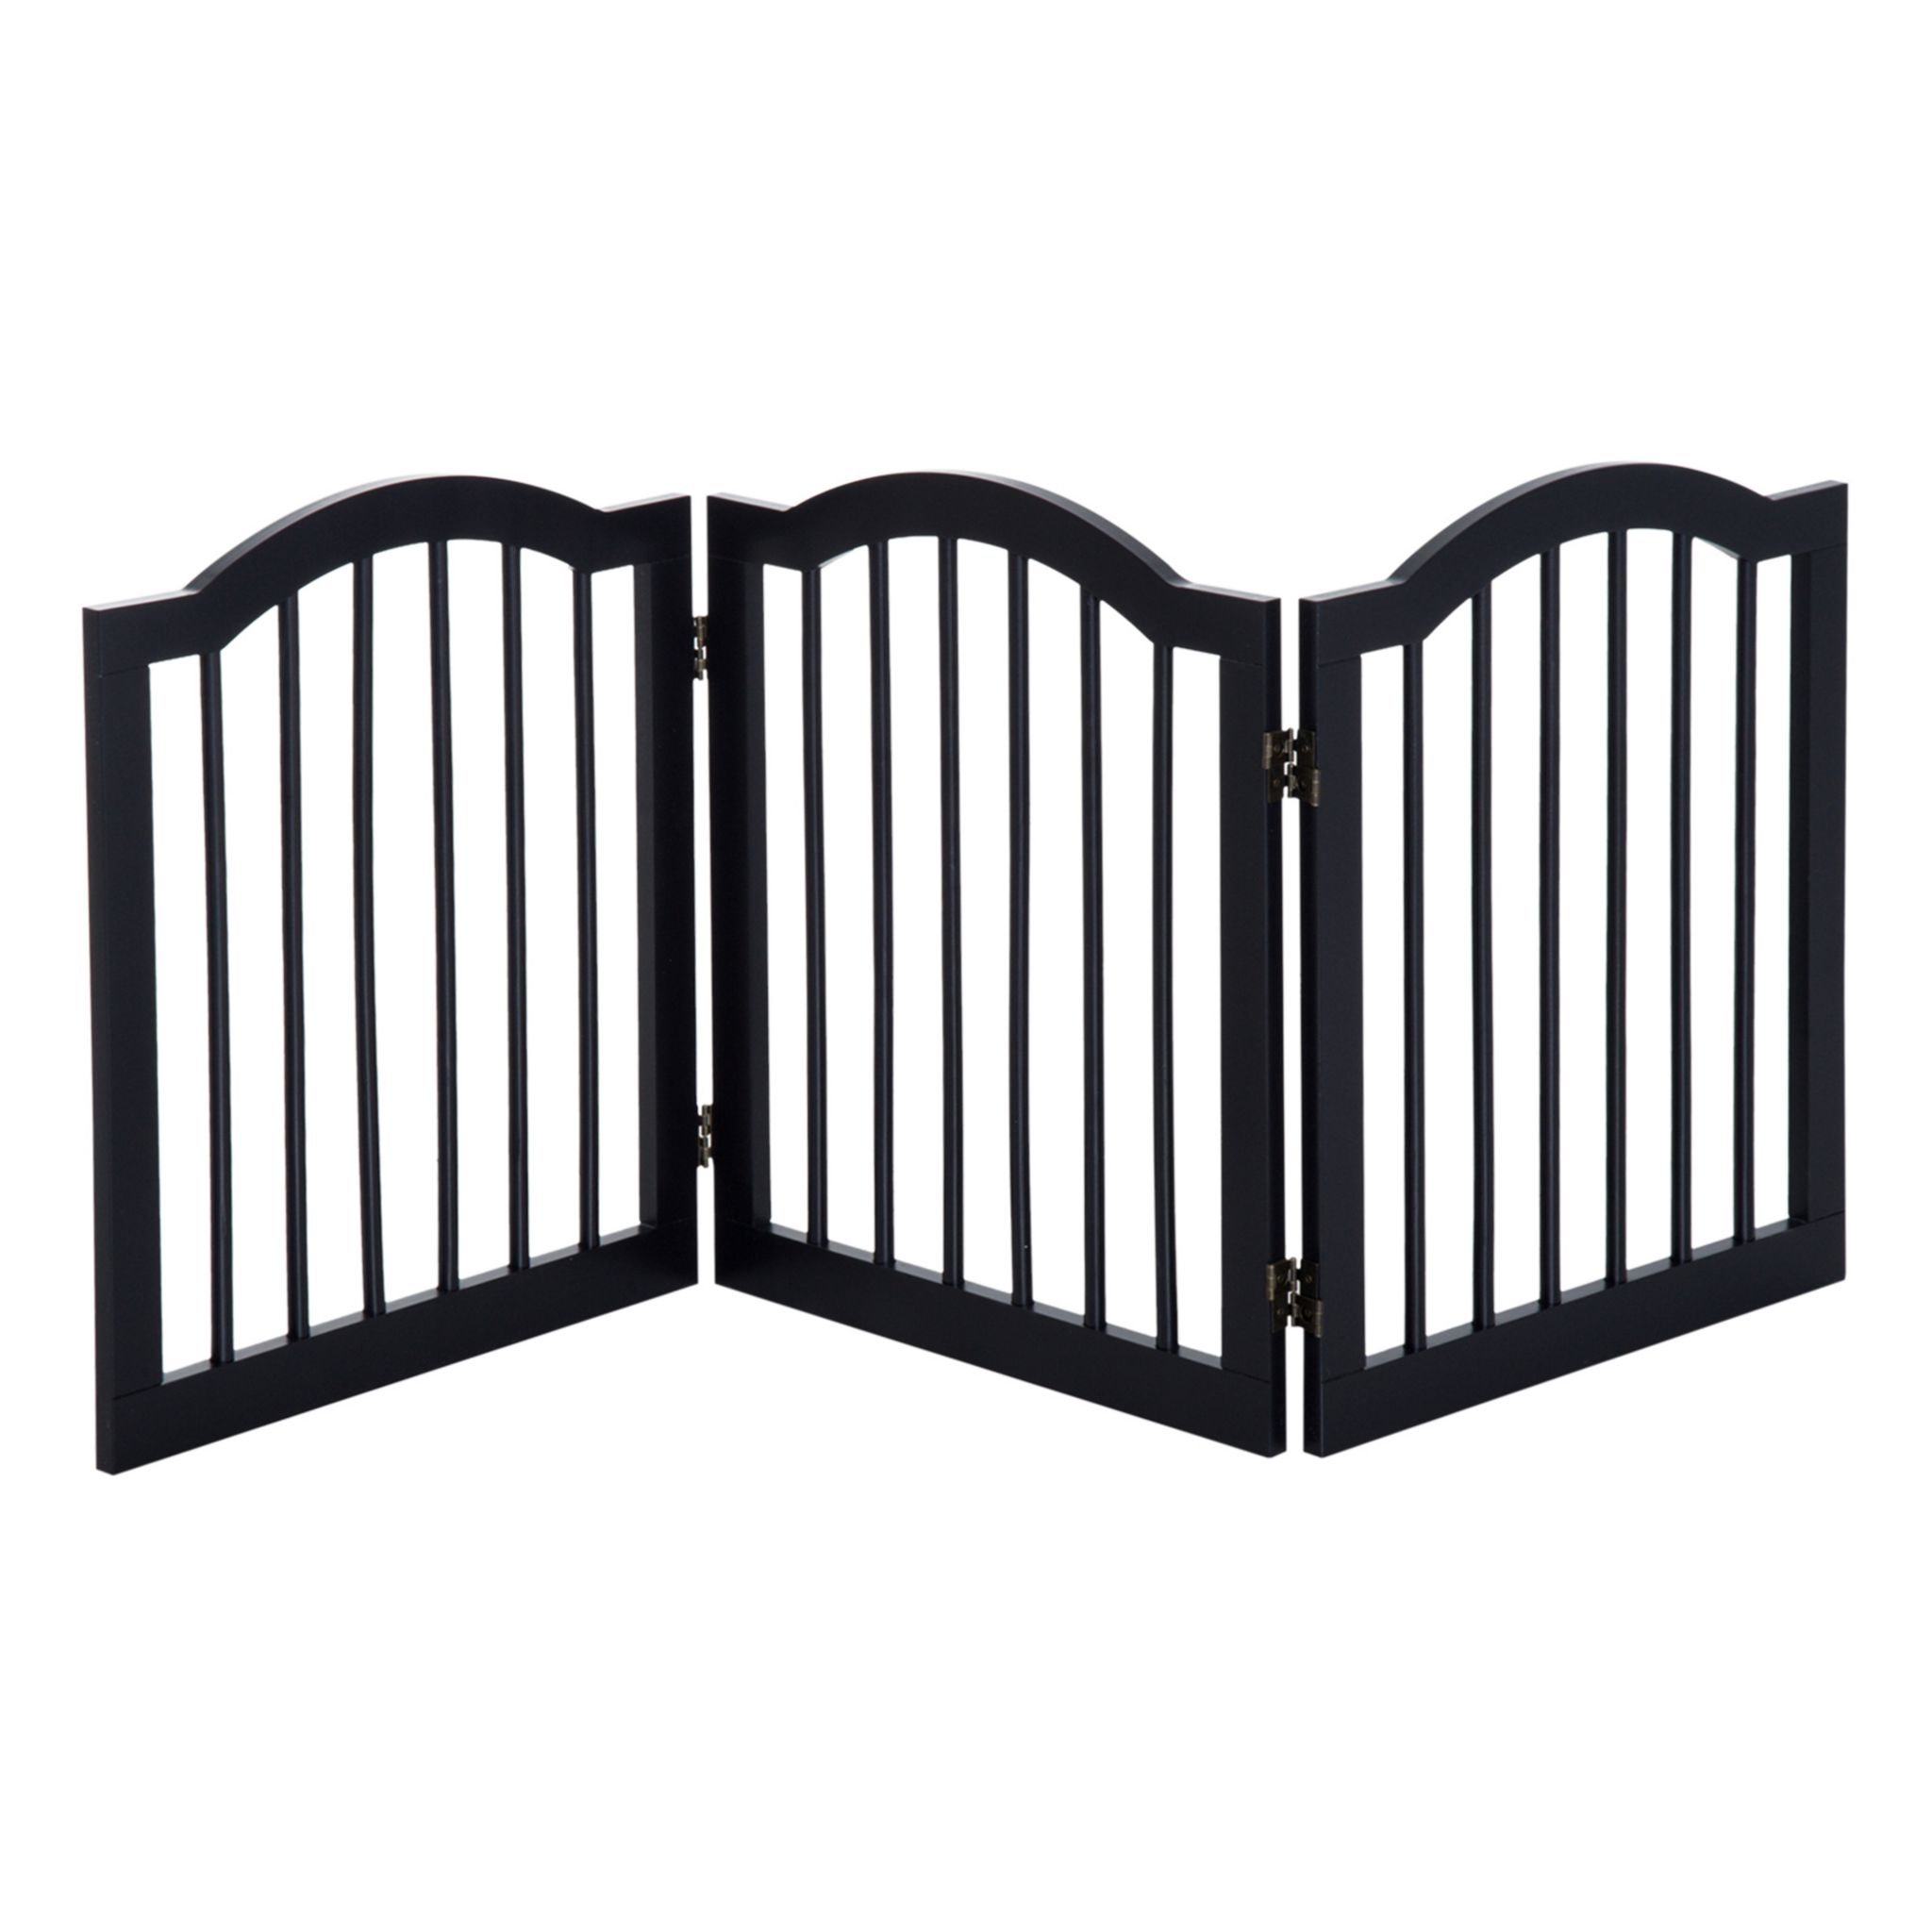 Barrière de sécurité chien barrière autoportante longueur réglable dim.  104-183L x 36l x 69H cm bois pin gris acier noir